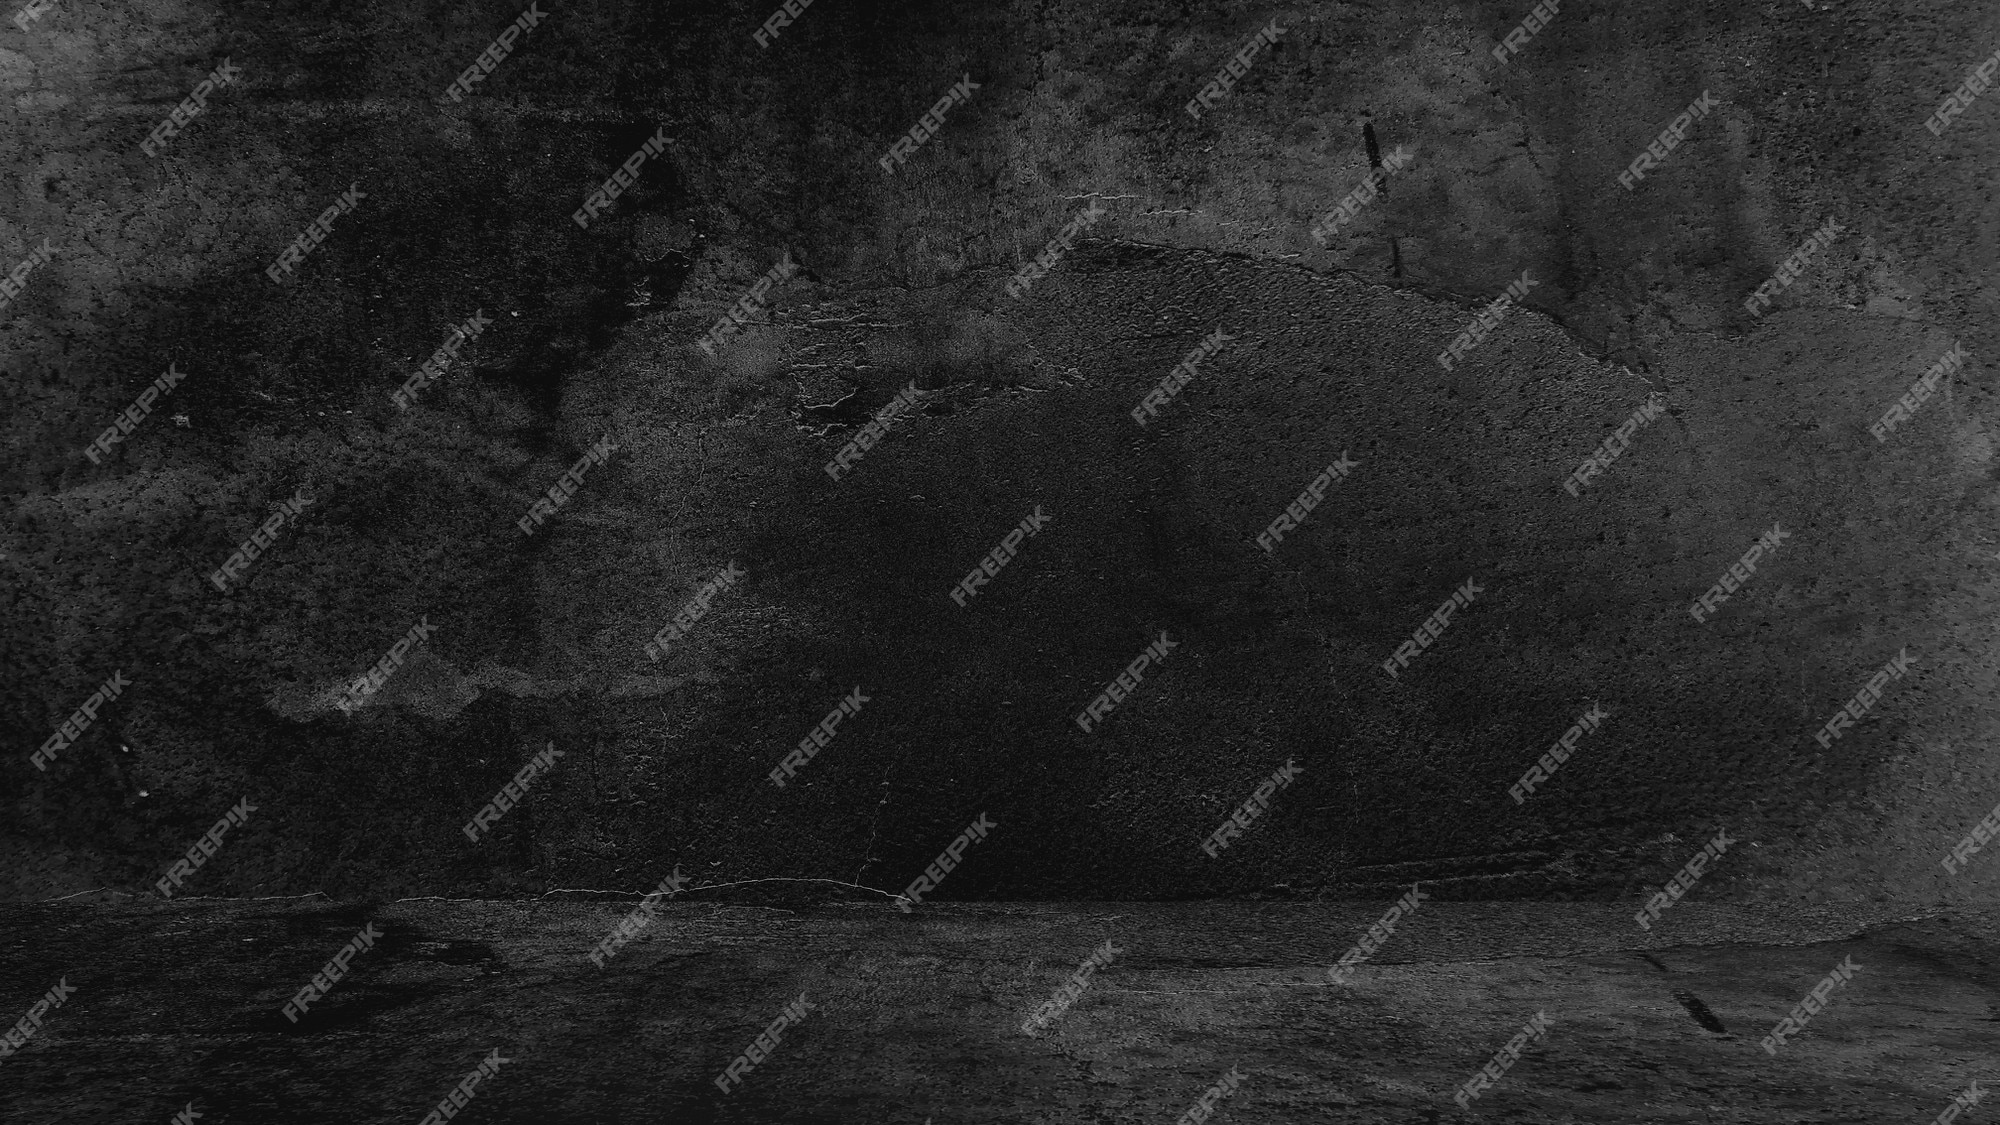 Với hình nền Concrete black background, bạn sẽ cảm thấy được sự chắc chắn và độc đáo của bề mặt. Cùng xem hình ảnh để tìm hiểu thêm về sự thu hút của mẫu hình này và thể hiện sự chuyên nghiệp của bạn.